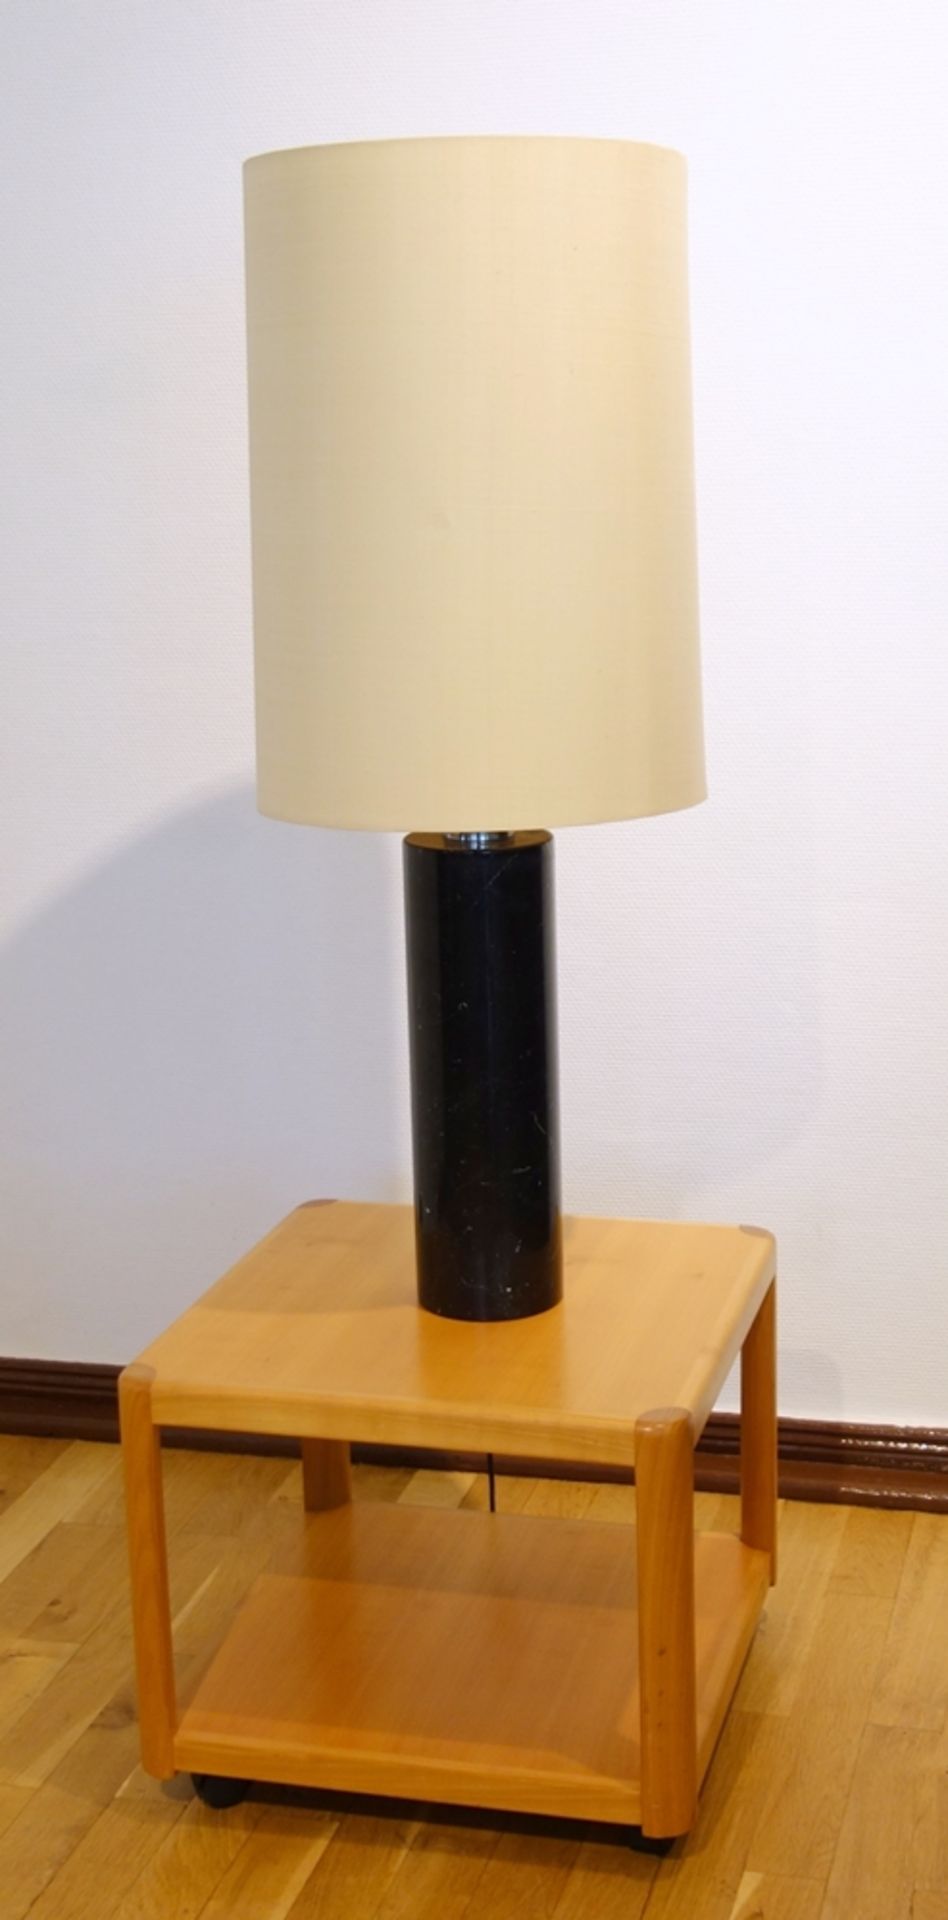 Lampe mit Marmorfuß, 1960er/1970er Jahre, massiver Marmorzylinder mit verchromter Montierung,